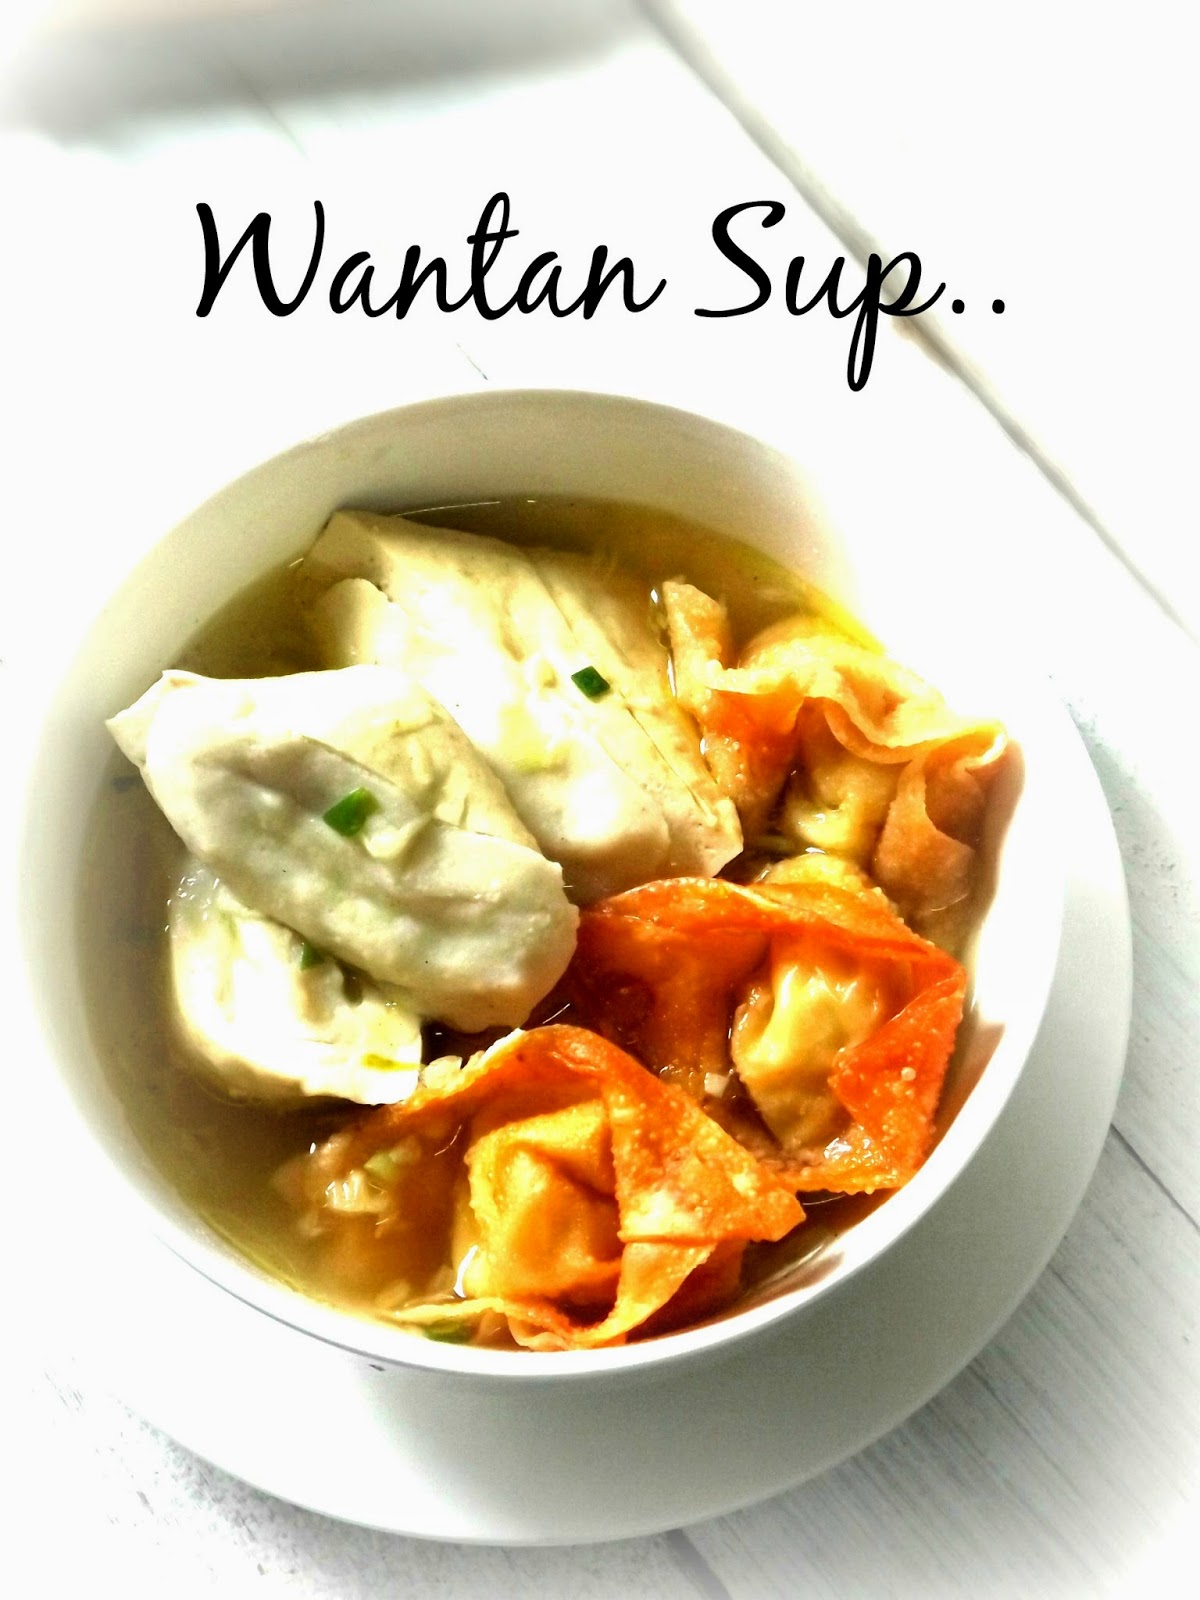 Julia Homemade: Sup Wantan